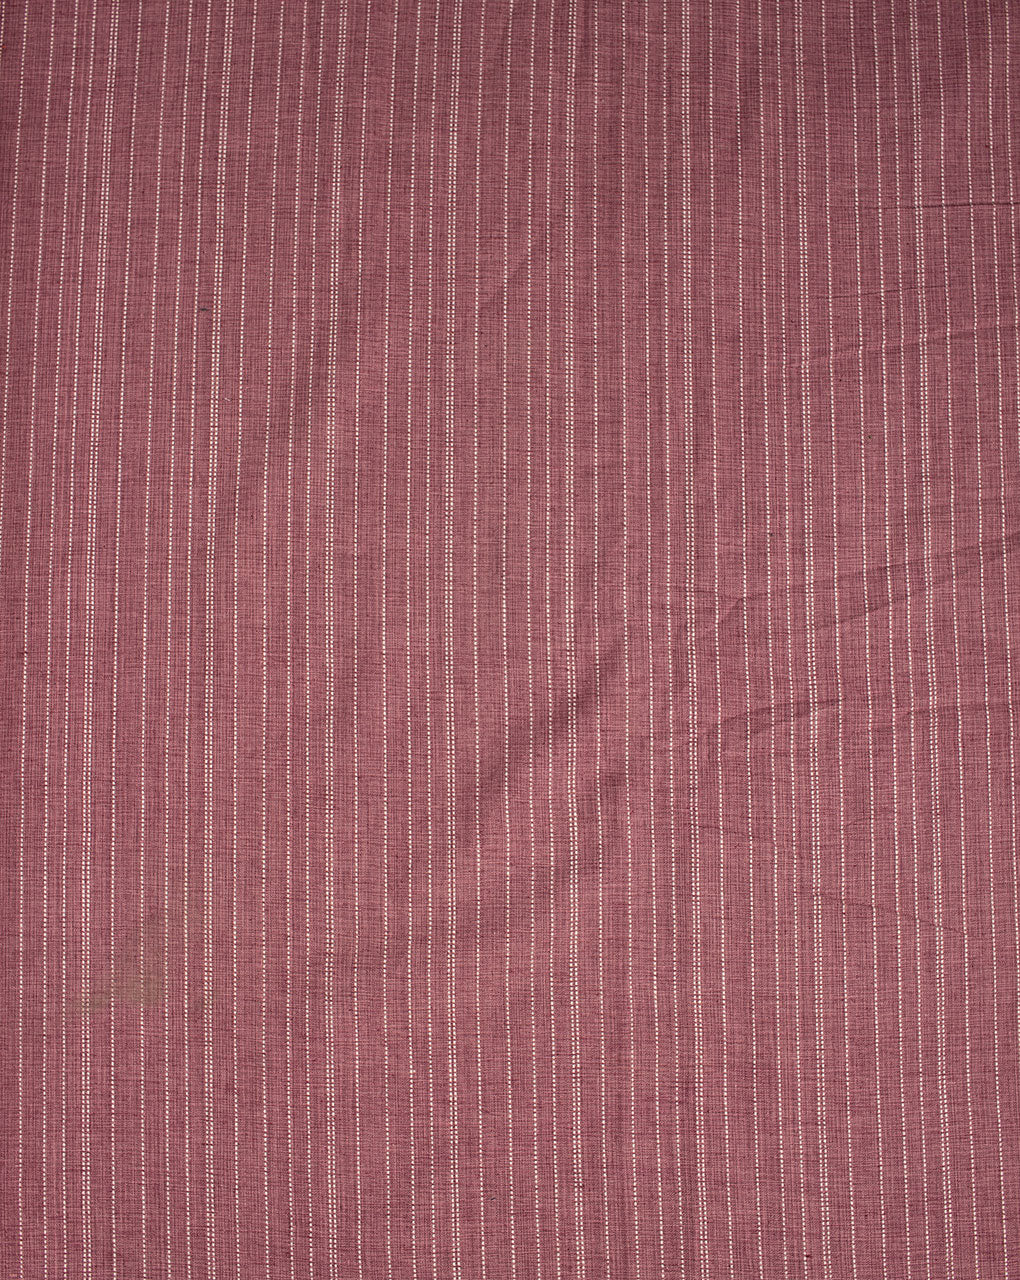 ( Pre Cut 50 CM ) Kantha Loom Textured Cotton Fabric